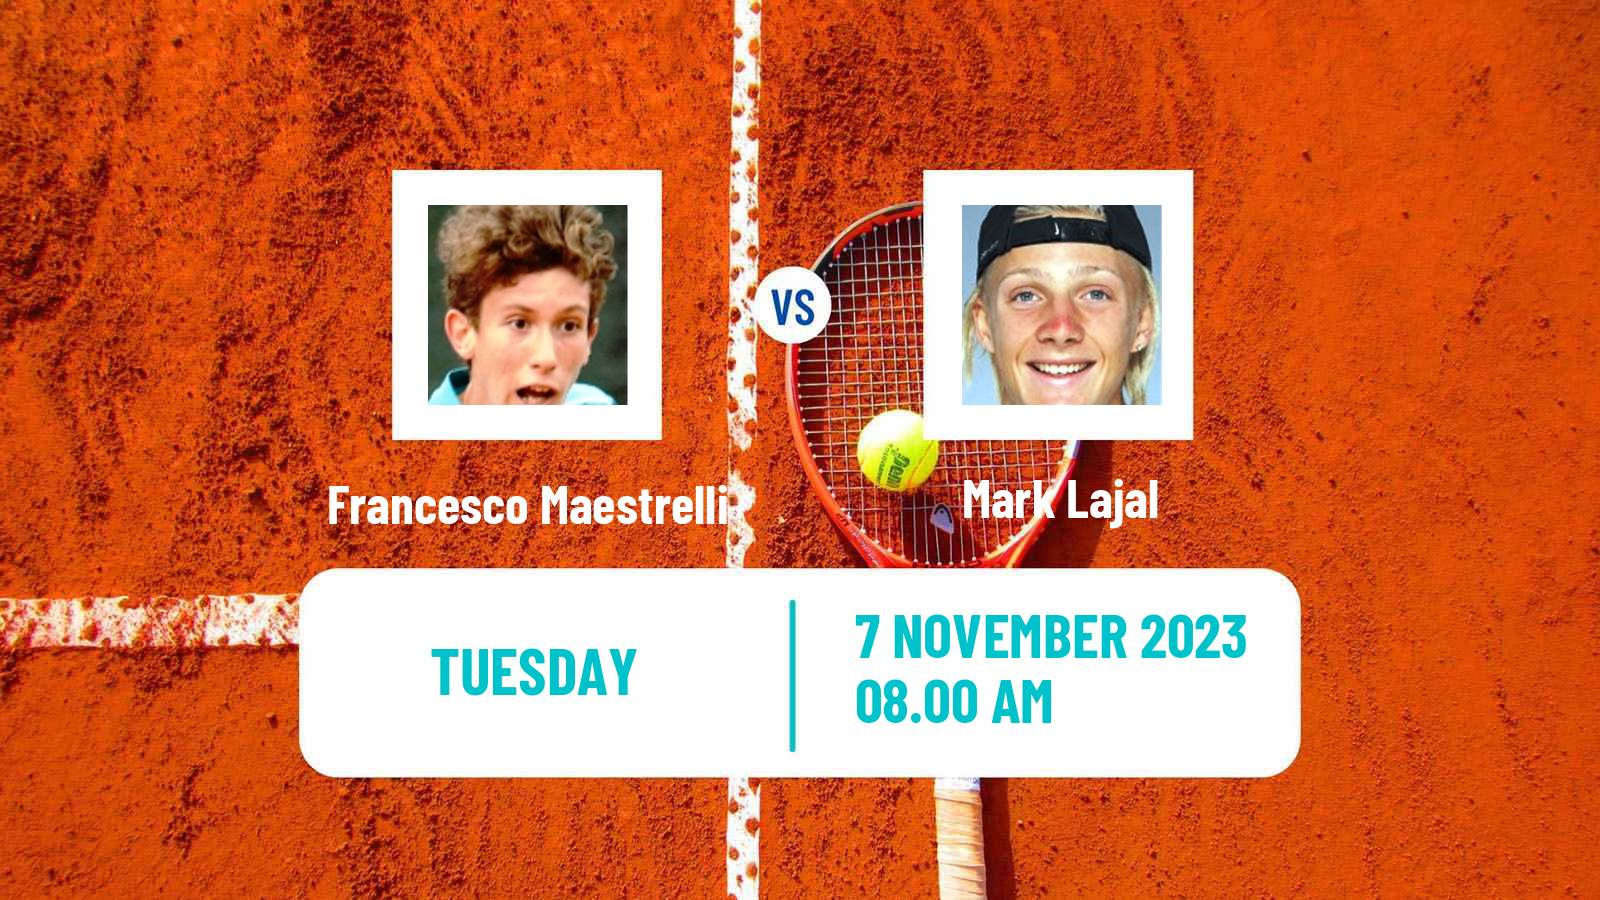 Tennis Helsinki Challenger Men Francesco Maestrelli - Mark Lajal